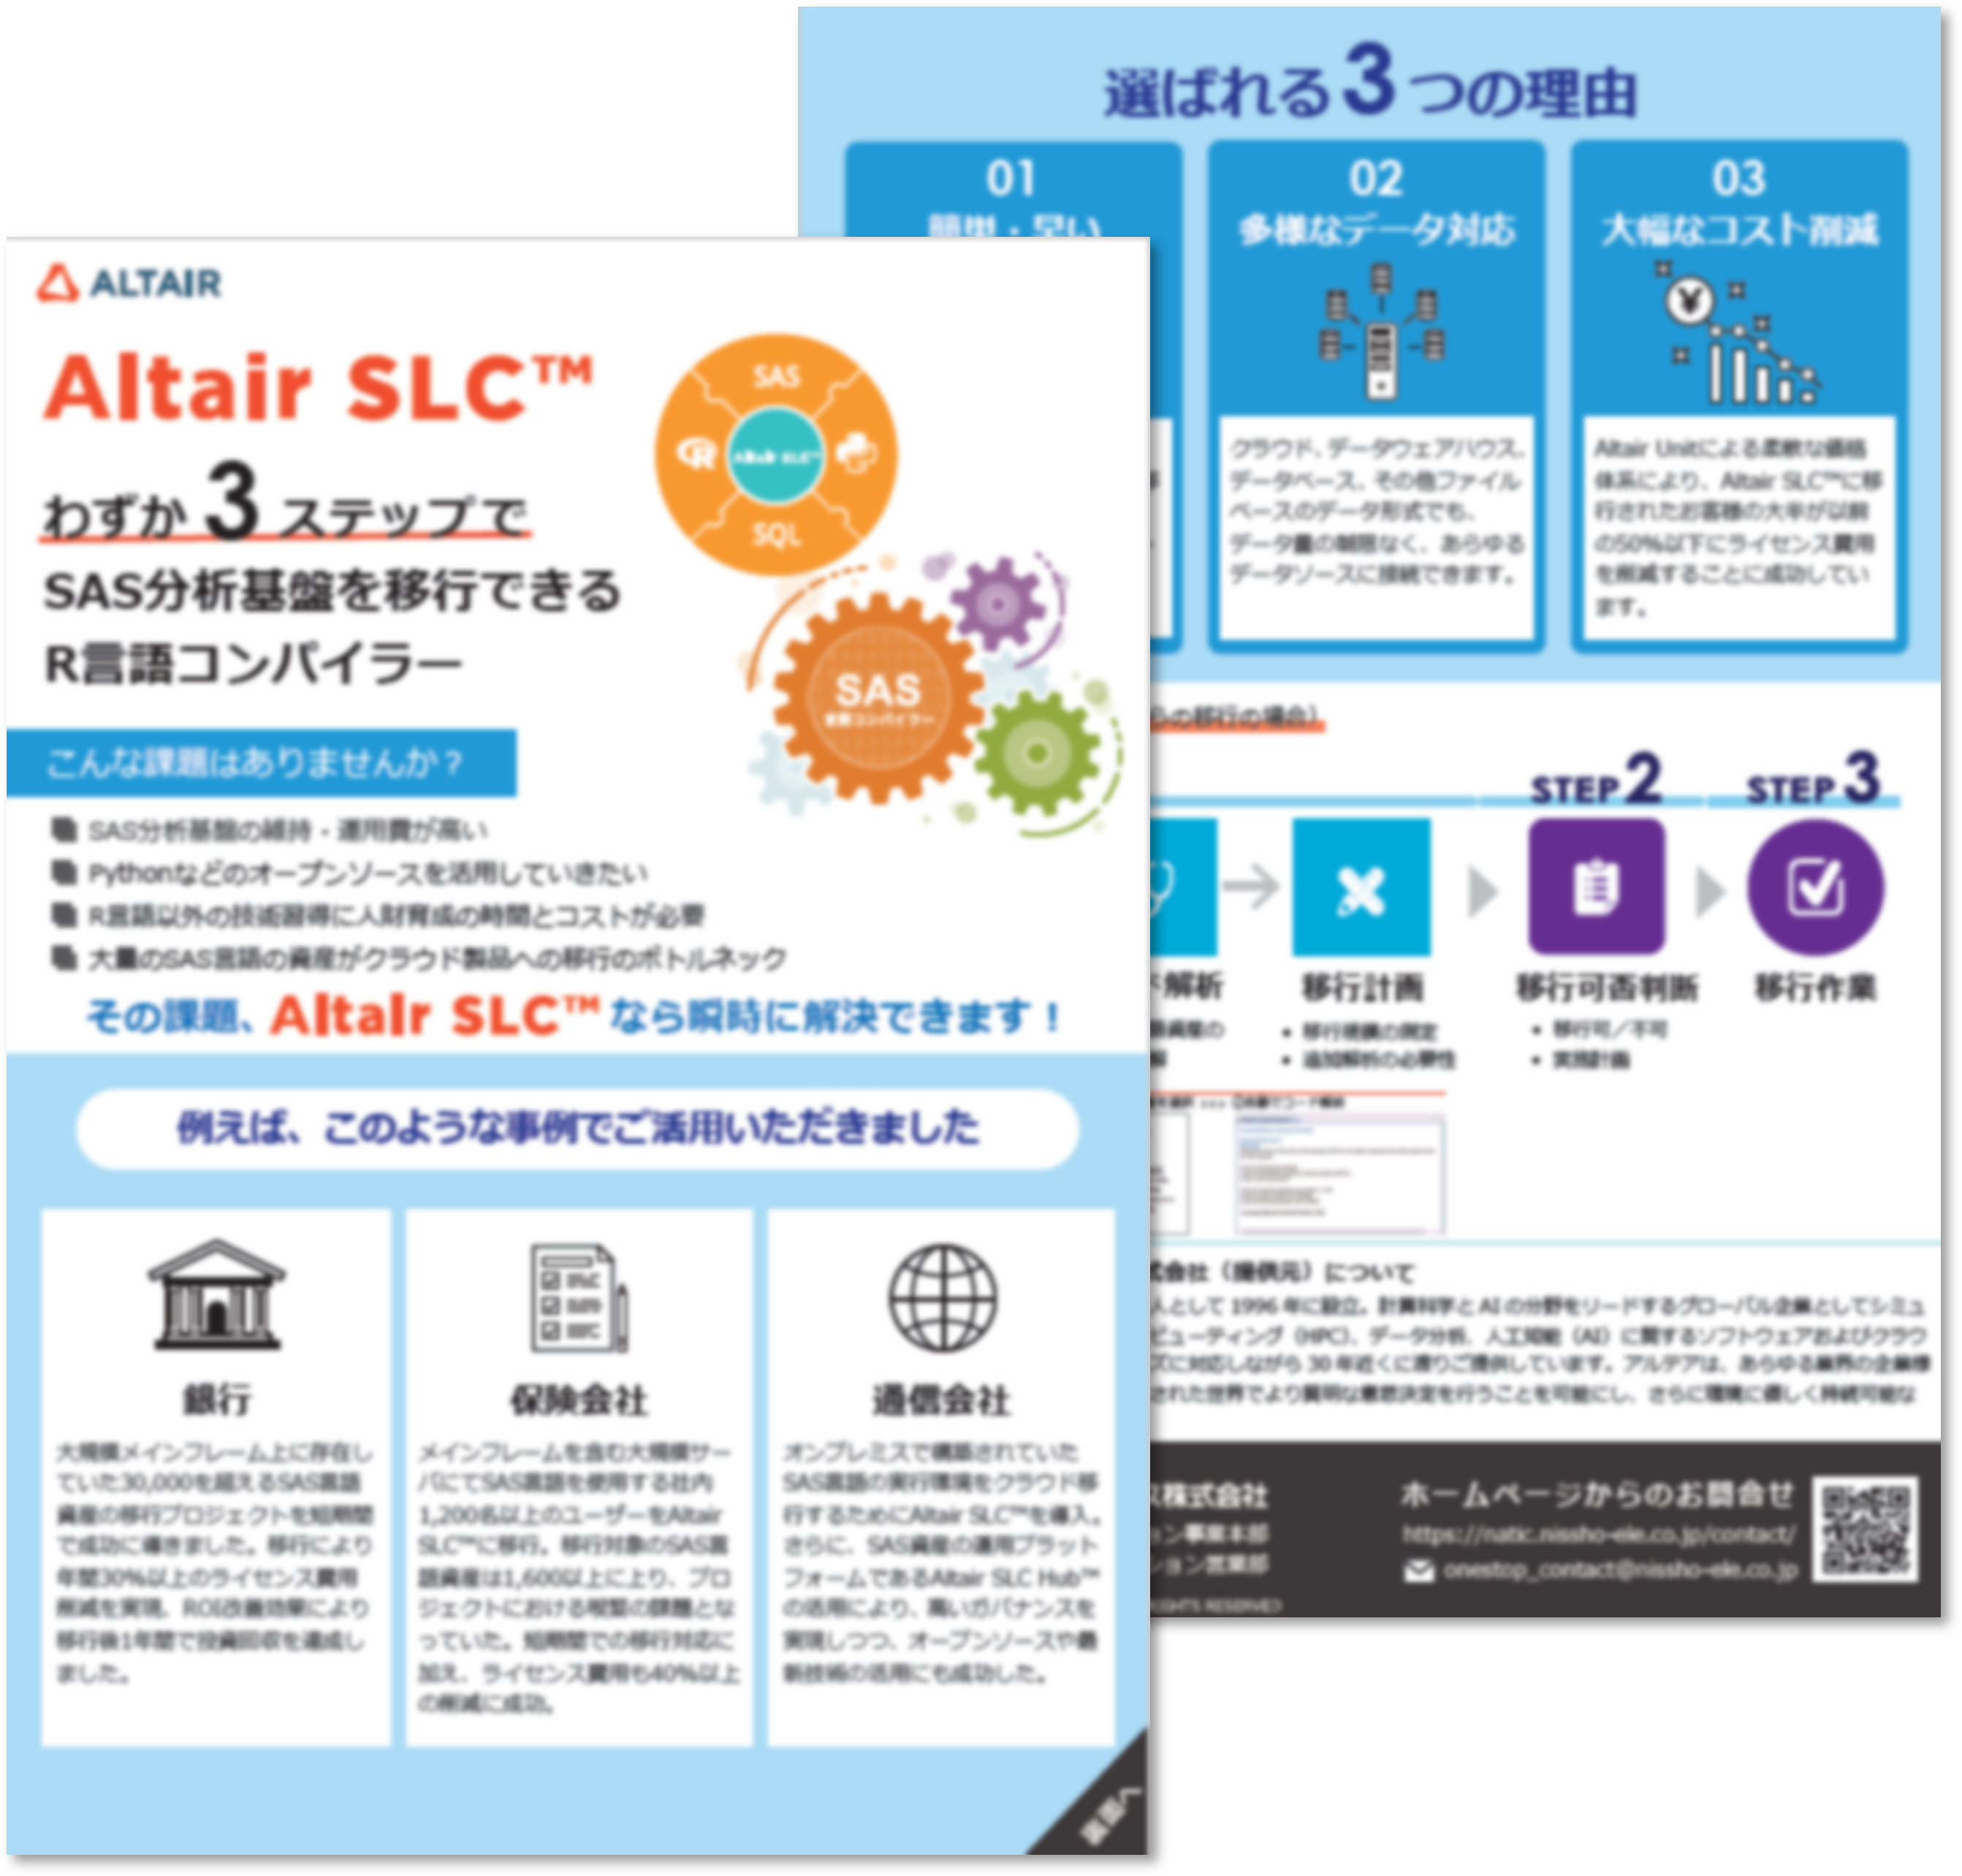 Altair slc Altair SLC わずか3ステップでSAS分析基盤を移行できるR言語コンパイラー